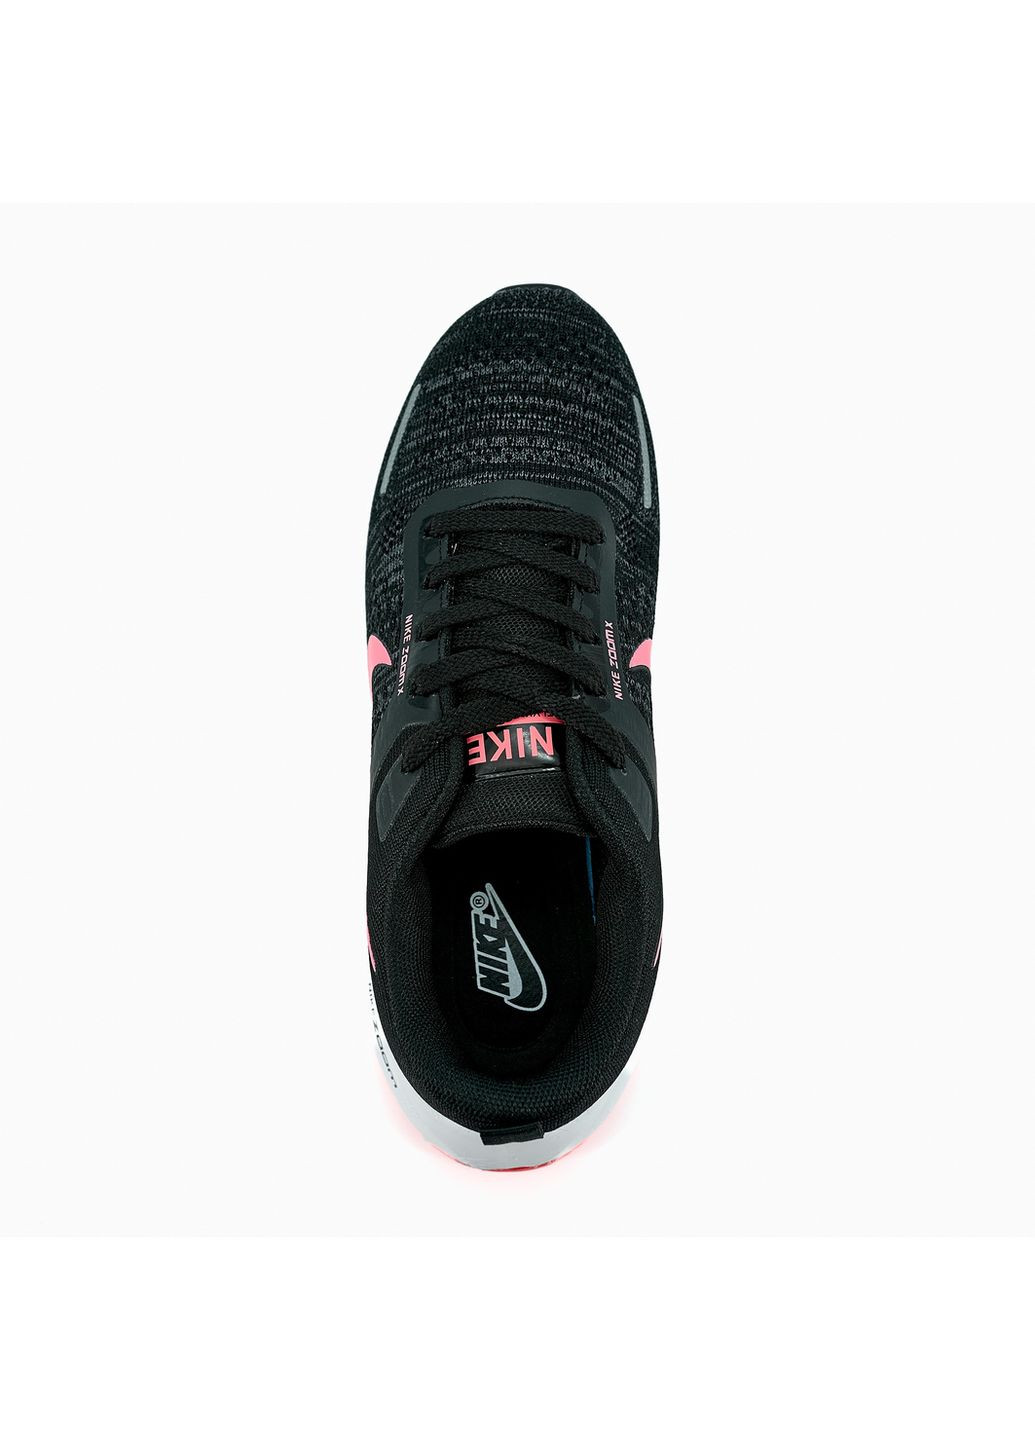 Чорні осінні кросівки жіночі zoom x black white pink, вьетнам Nike